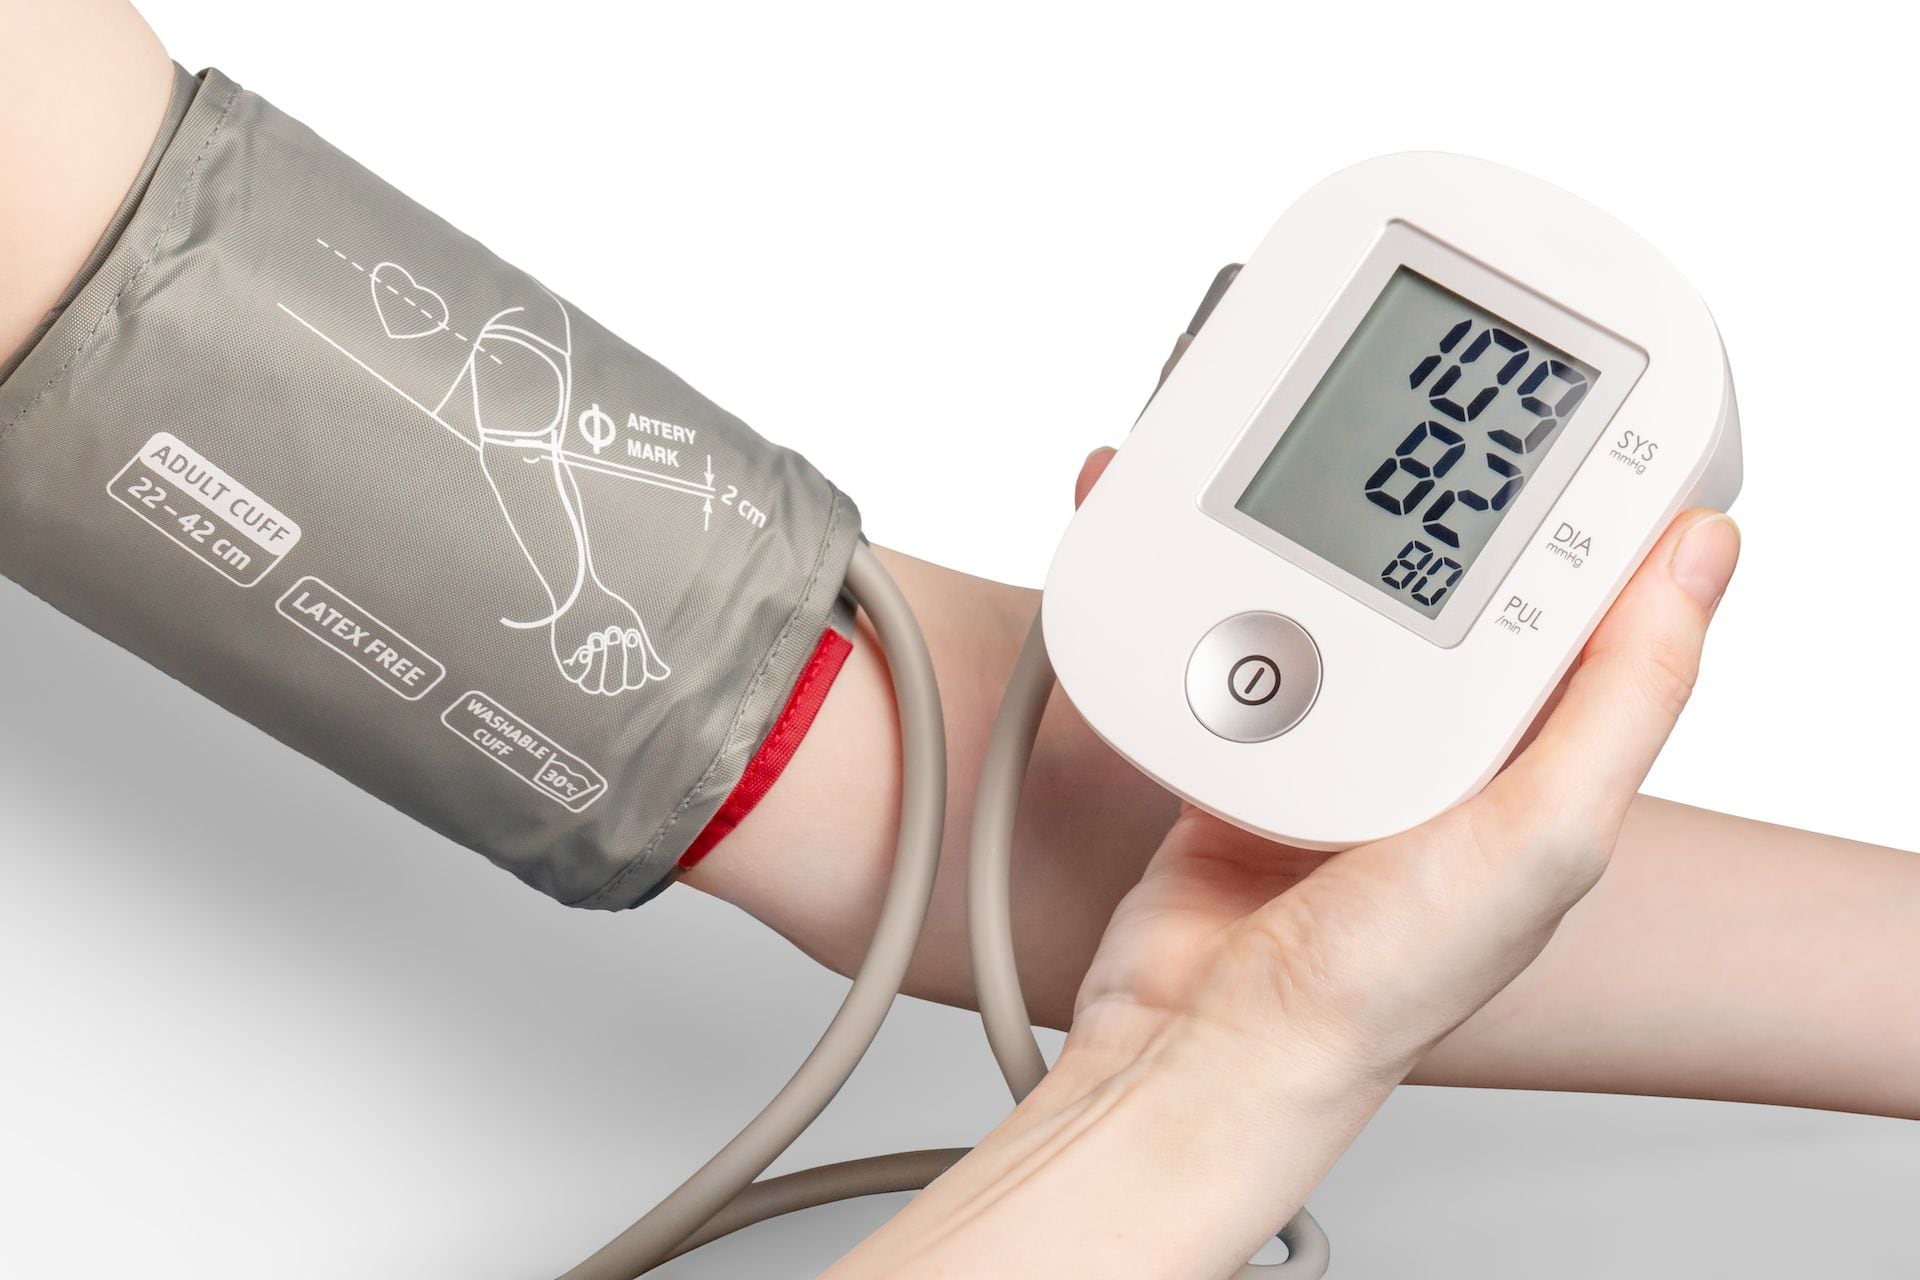 Tensiometro Digital de Brazo Medidor de Presion Arterial Maquina Para Medir  New